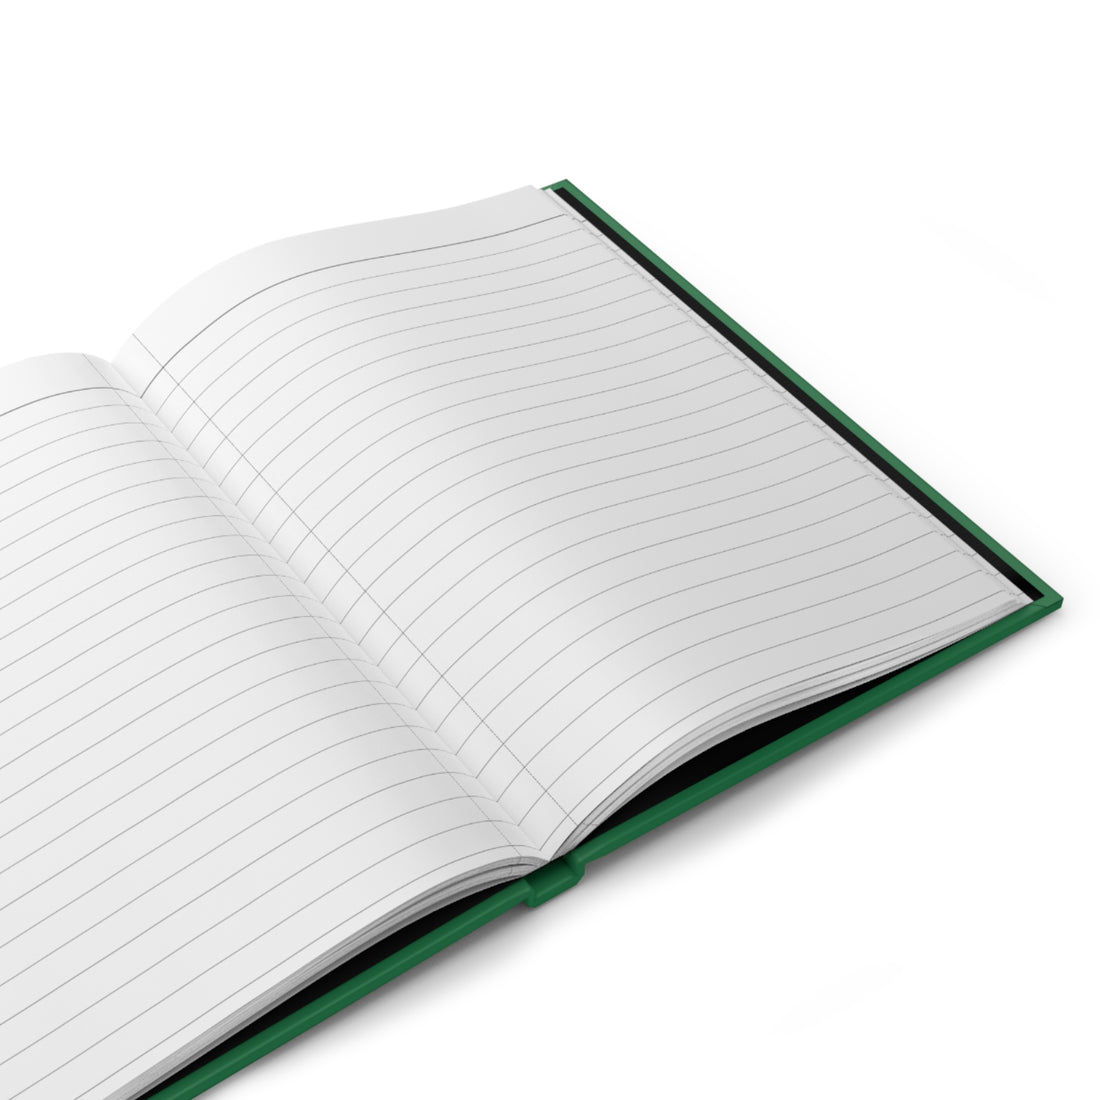 Emerald Green Notebook, Matte Hardcover Journal